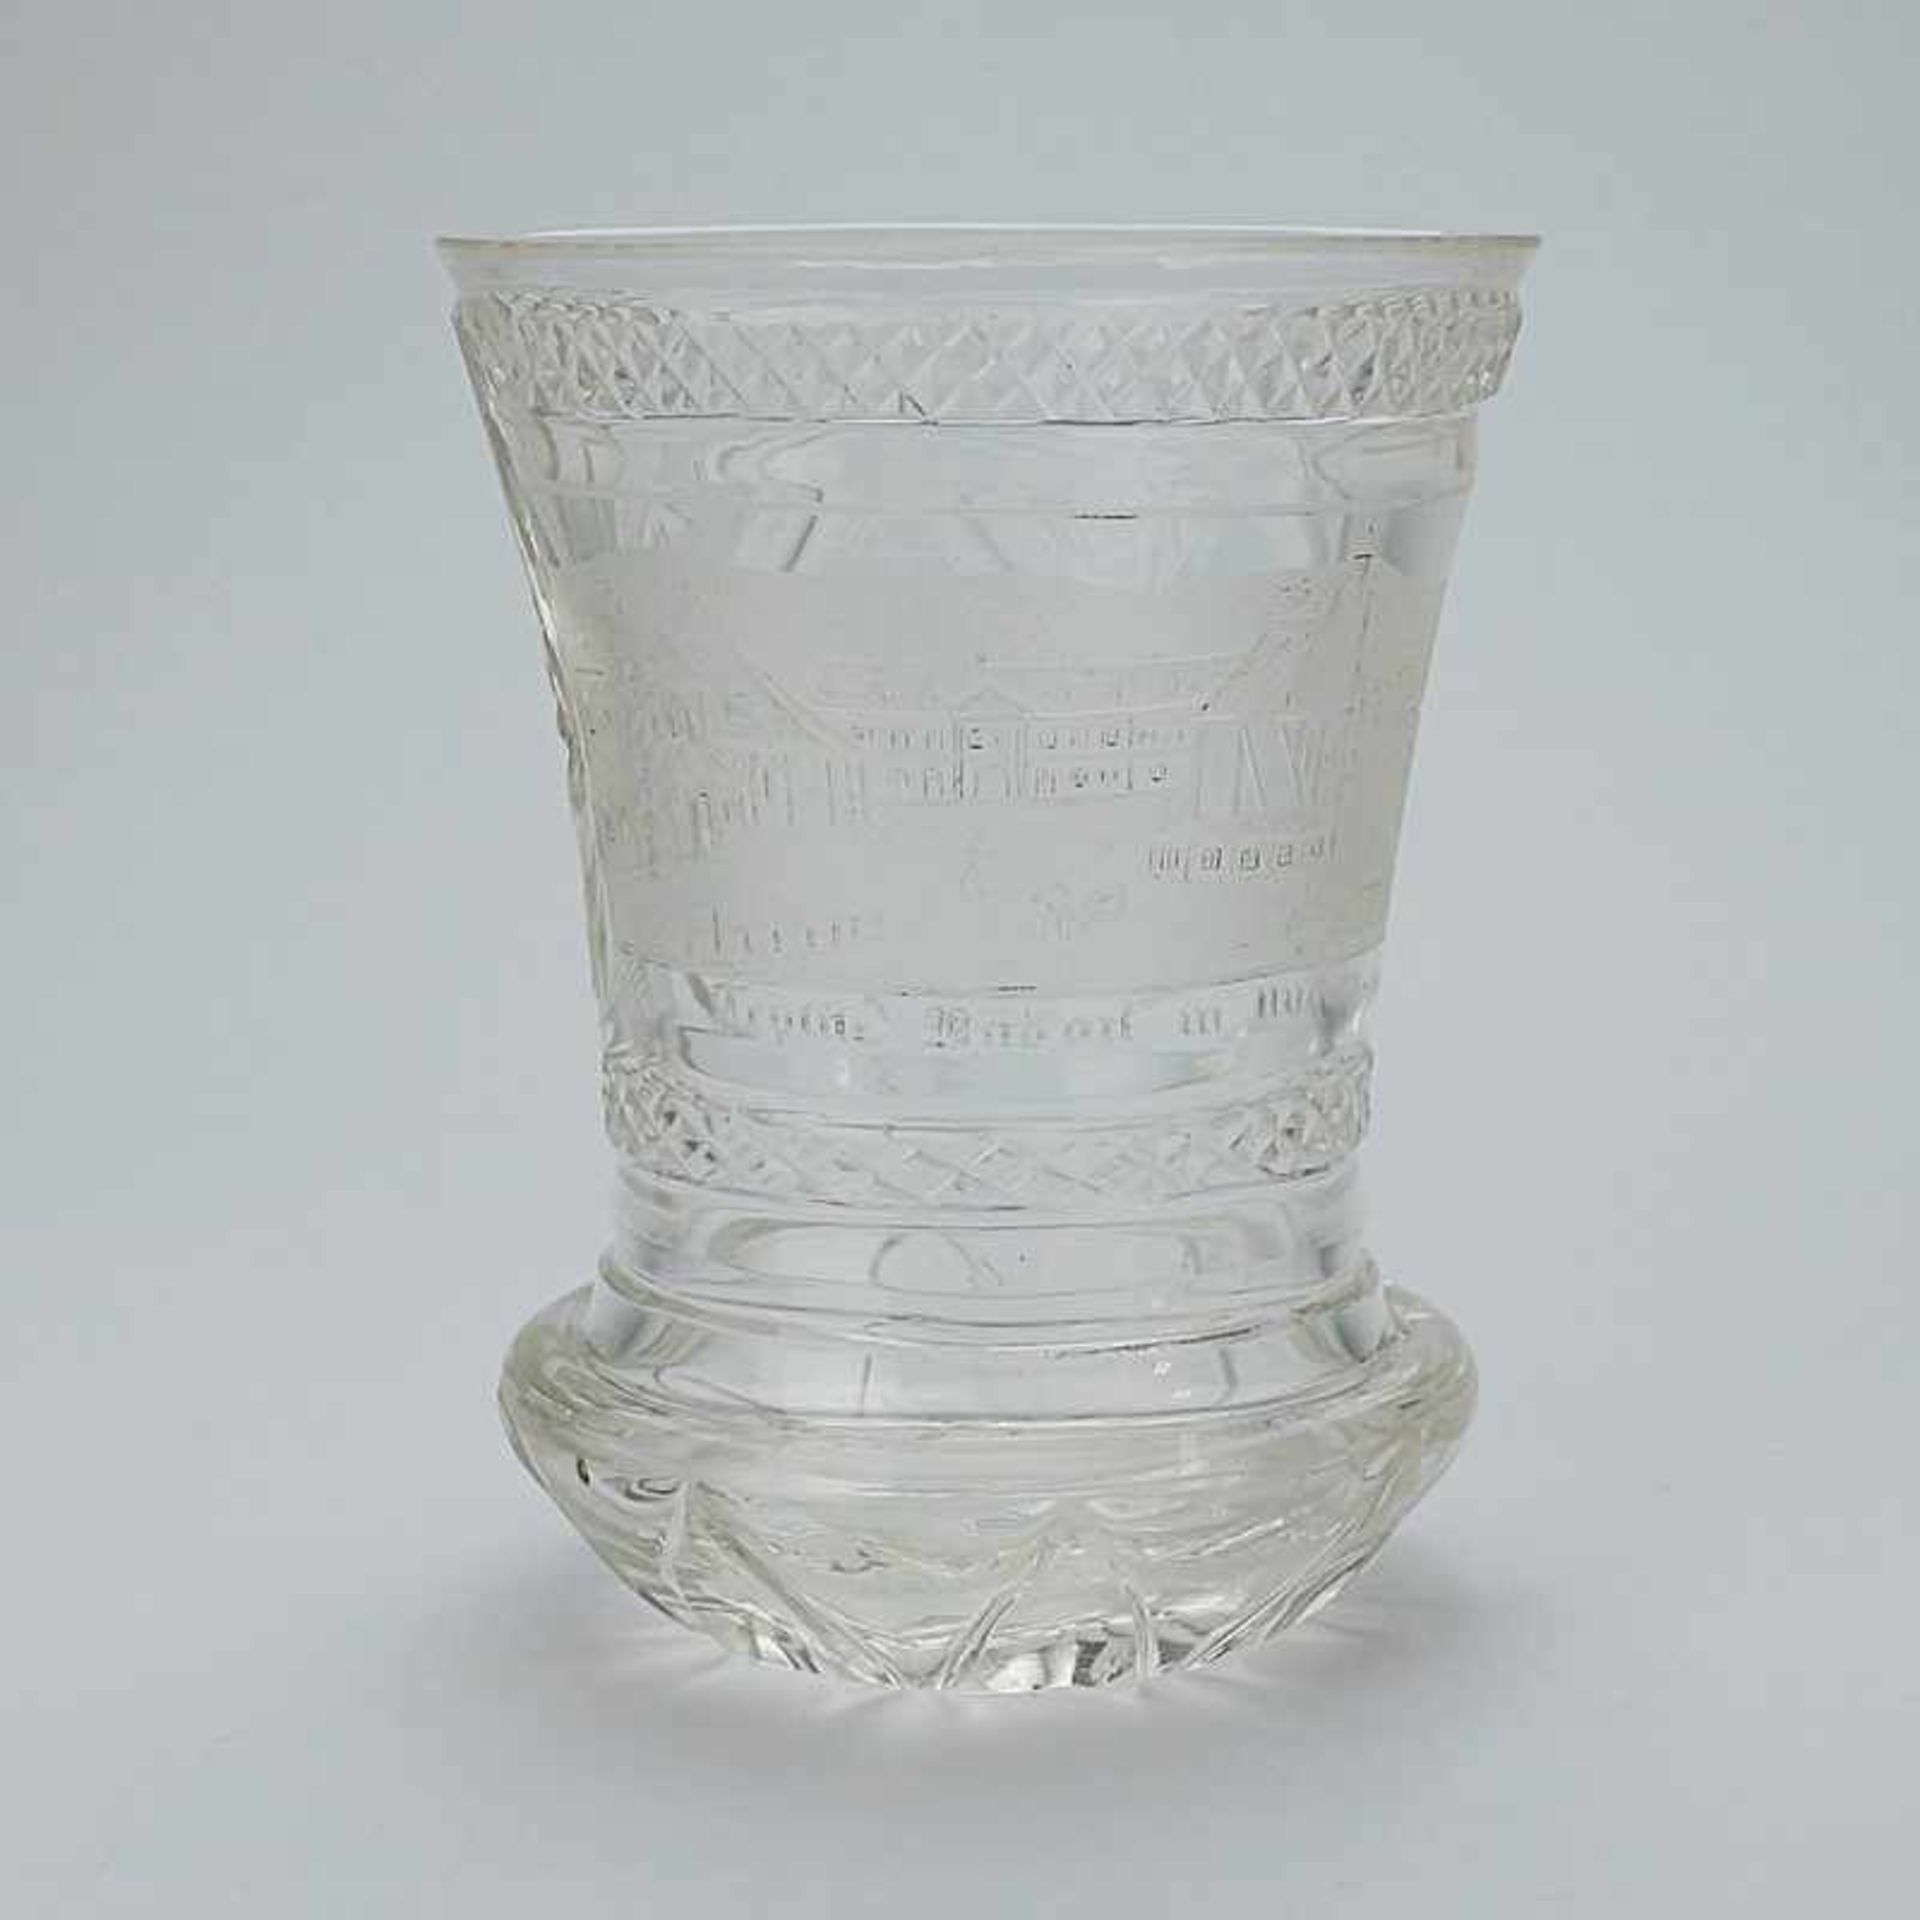 Bäderglas - Bad Teplitz um 1820/30, farbloses Glas, runder ranftartiger Stand, konischer, leicht